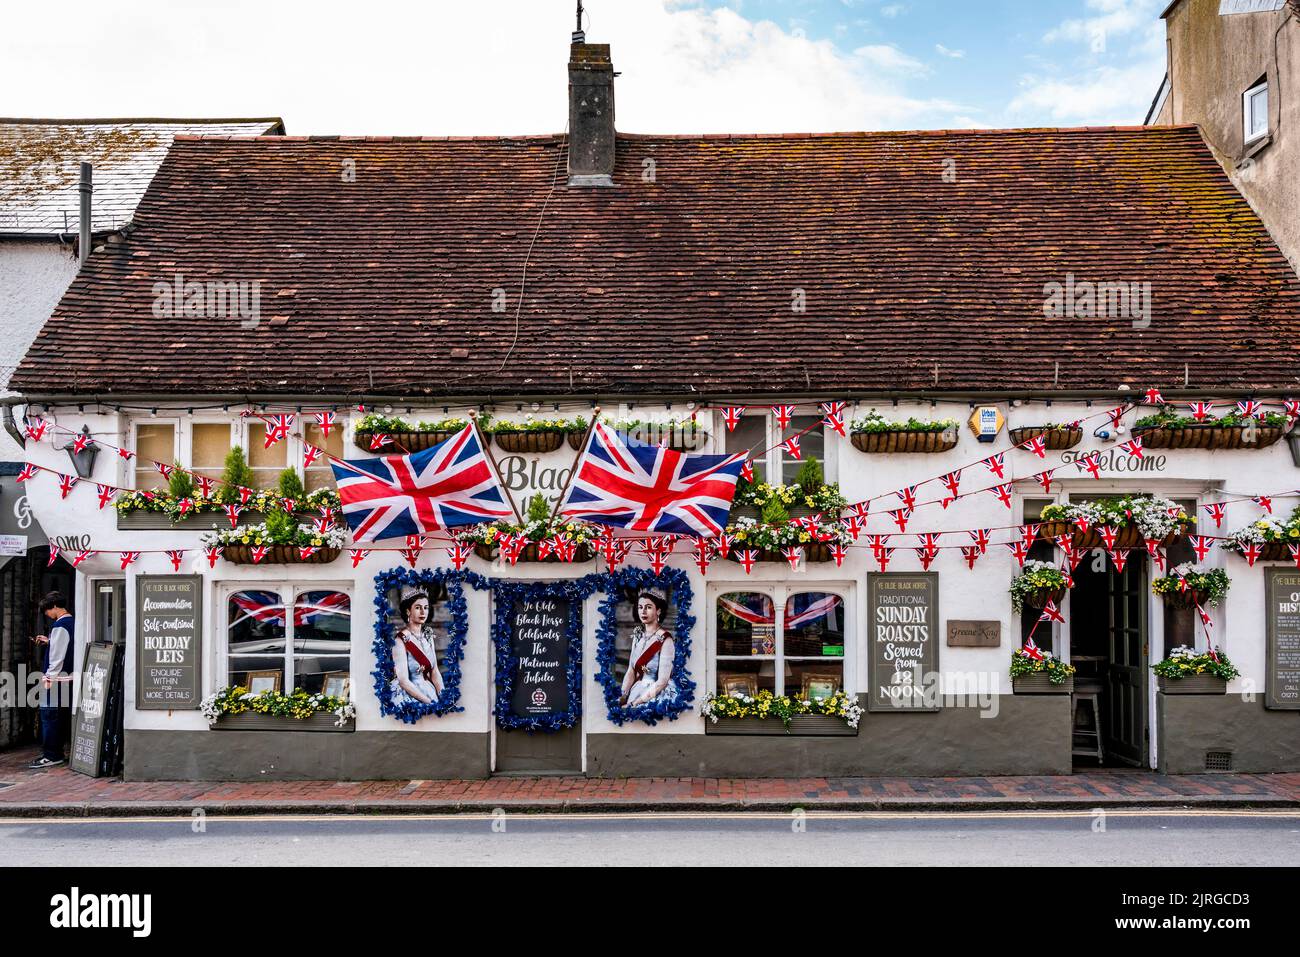 Bandiere e ritratti della Regina adornano il fronte del Black Horse Pub durante le celebrazioni del Platinum Jubilee della Regina, Rottingdean, Sussex, UK. Foto Stock